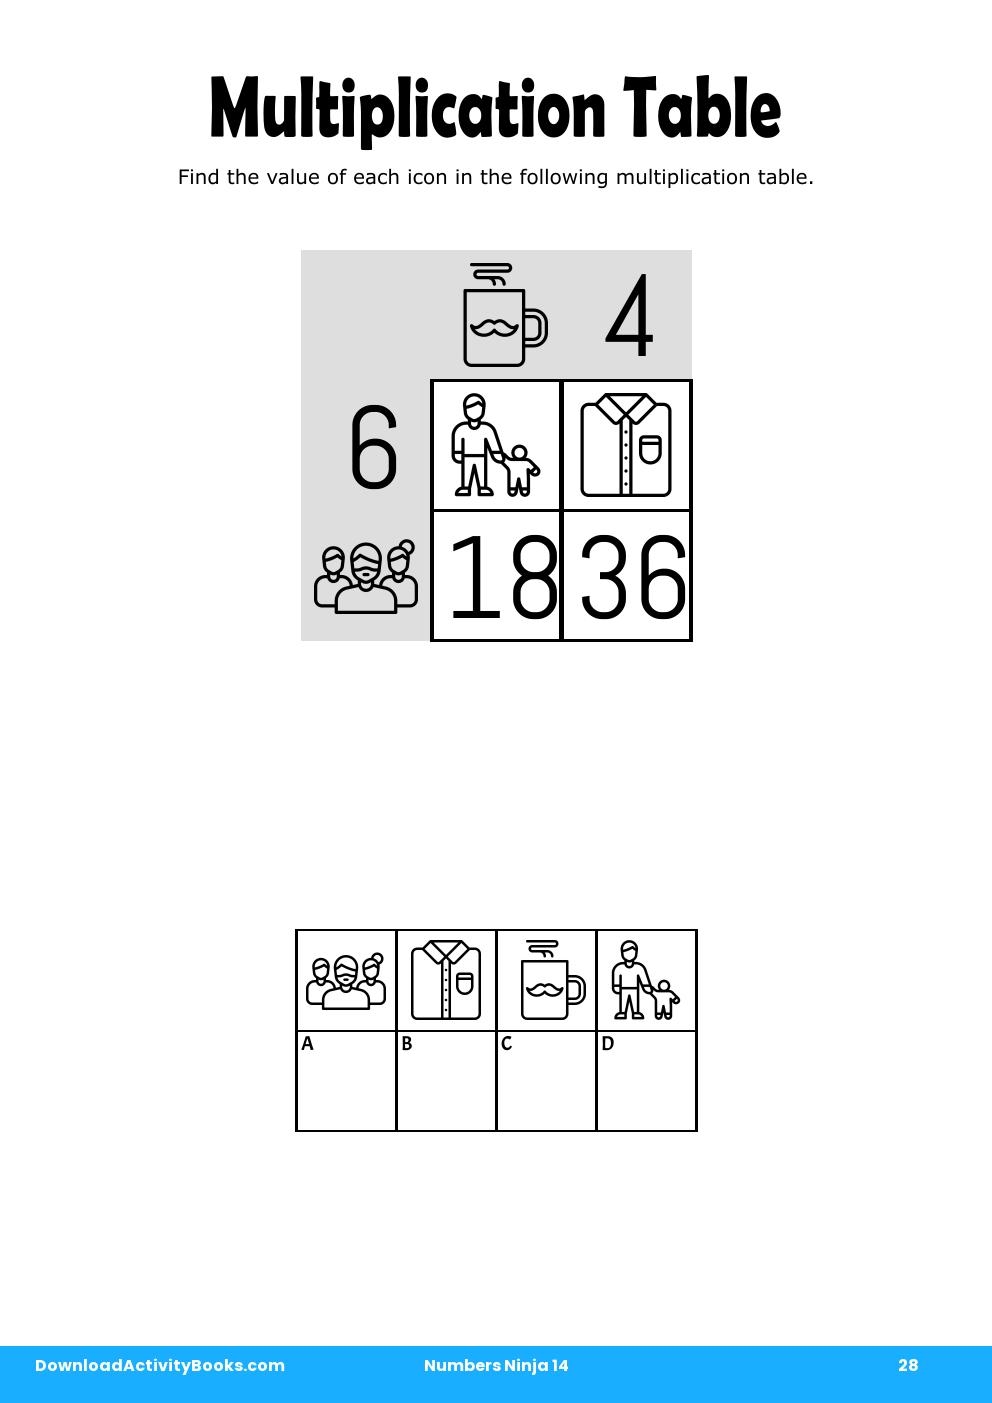 Multiplication Table in Numbers Ninja 14